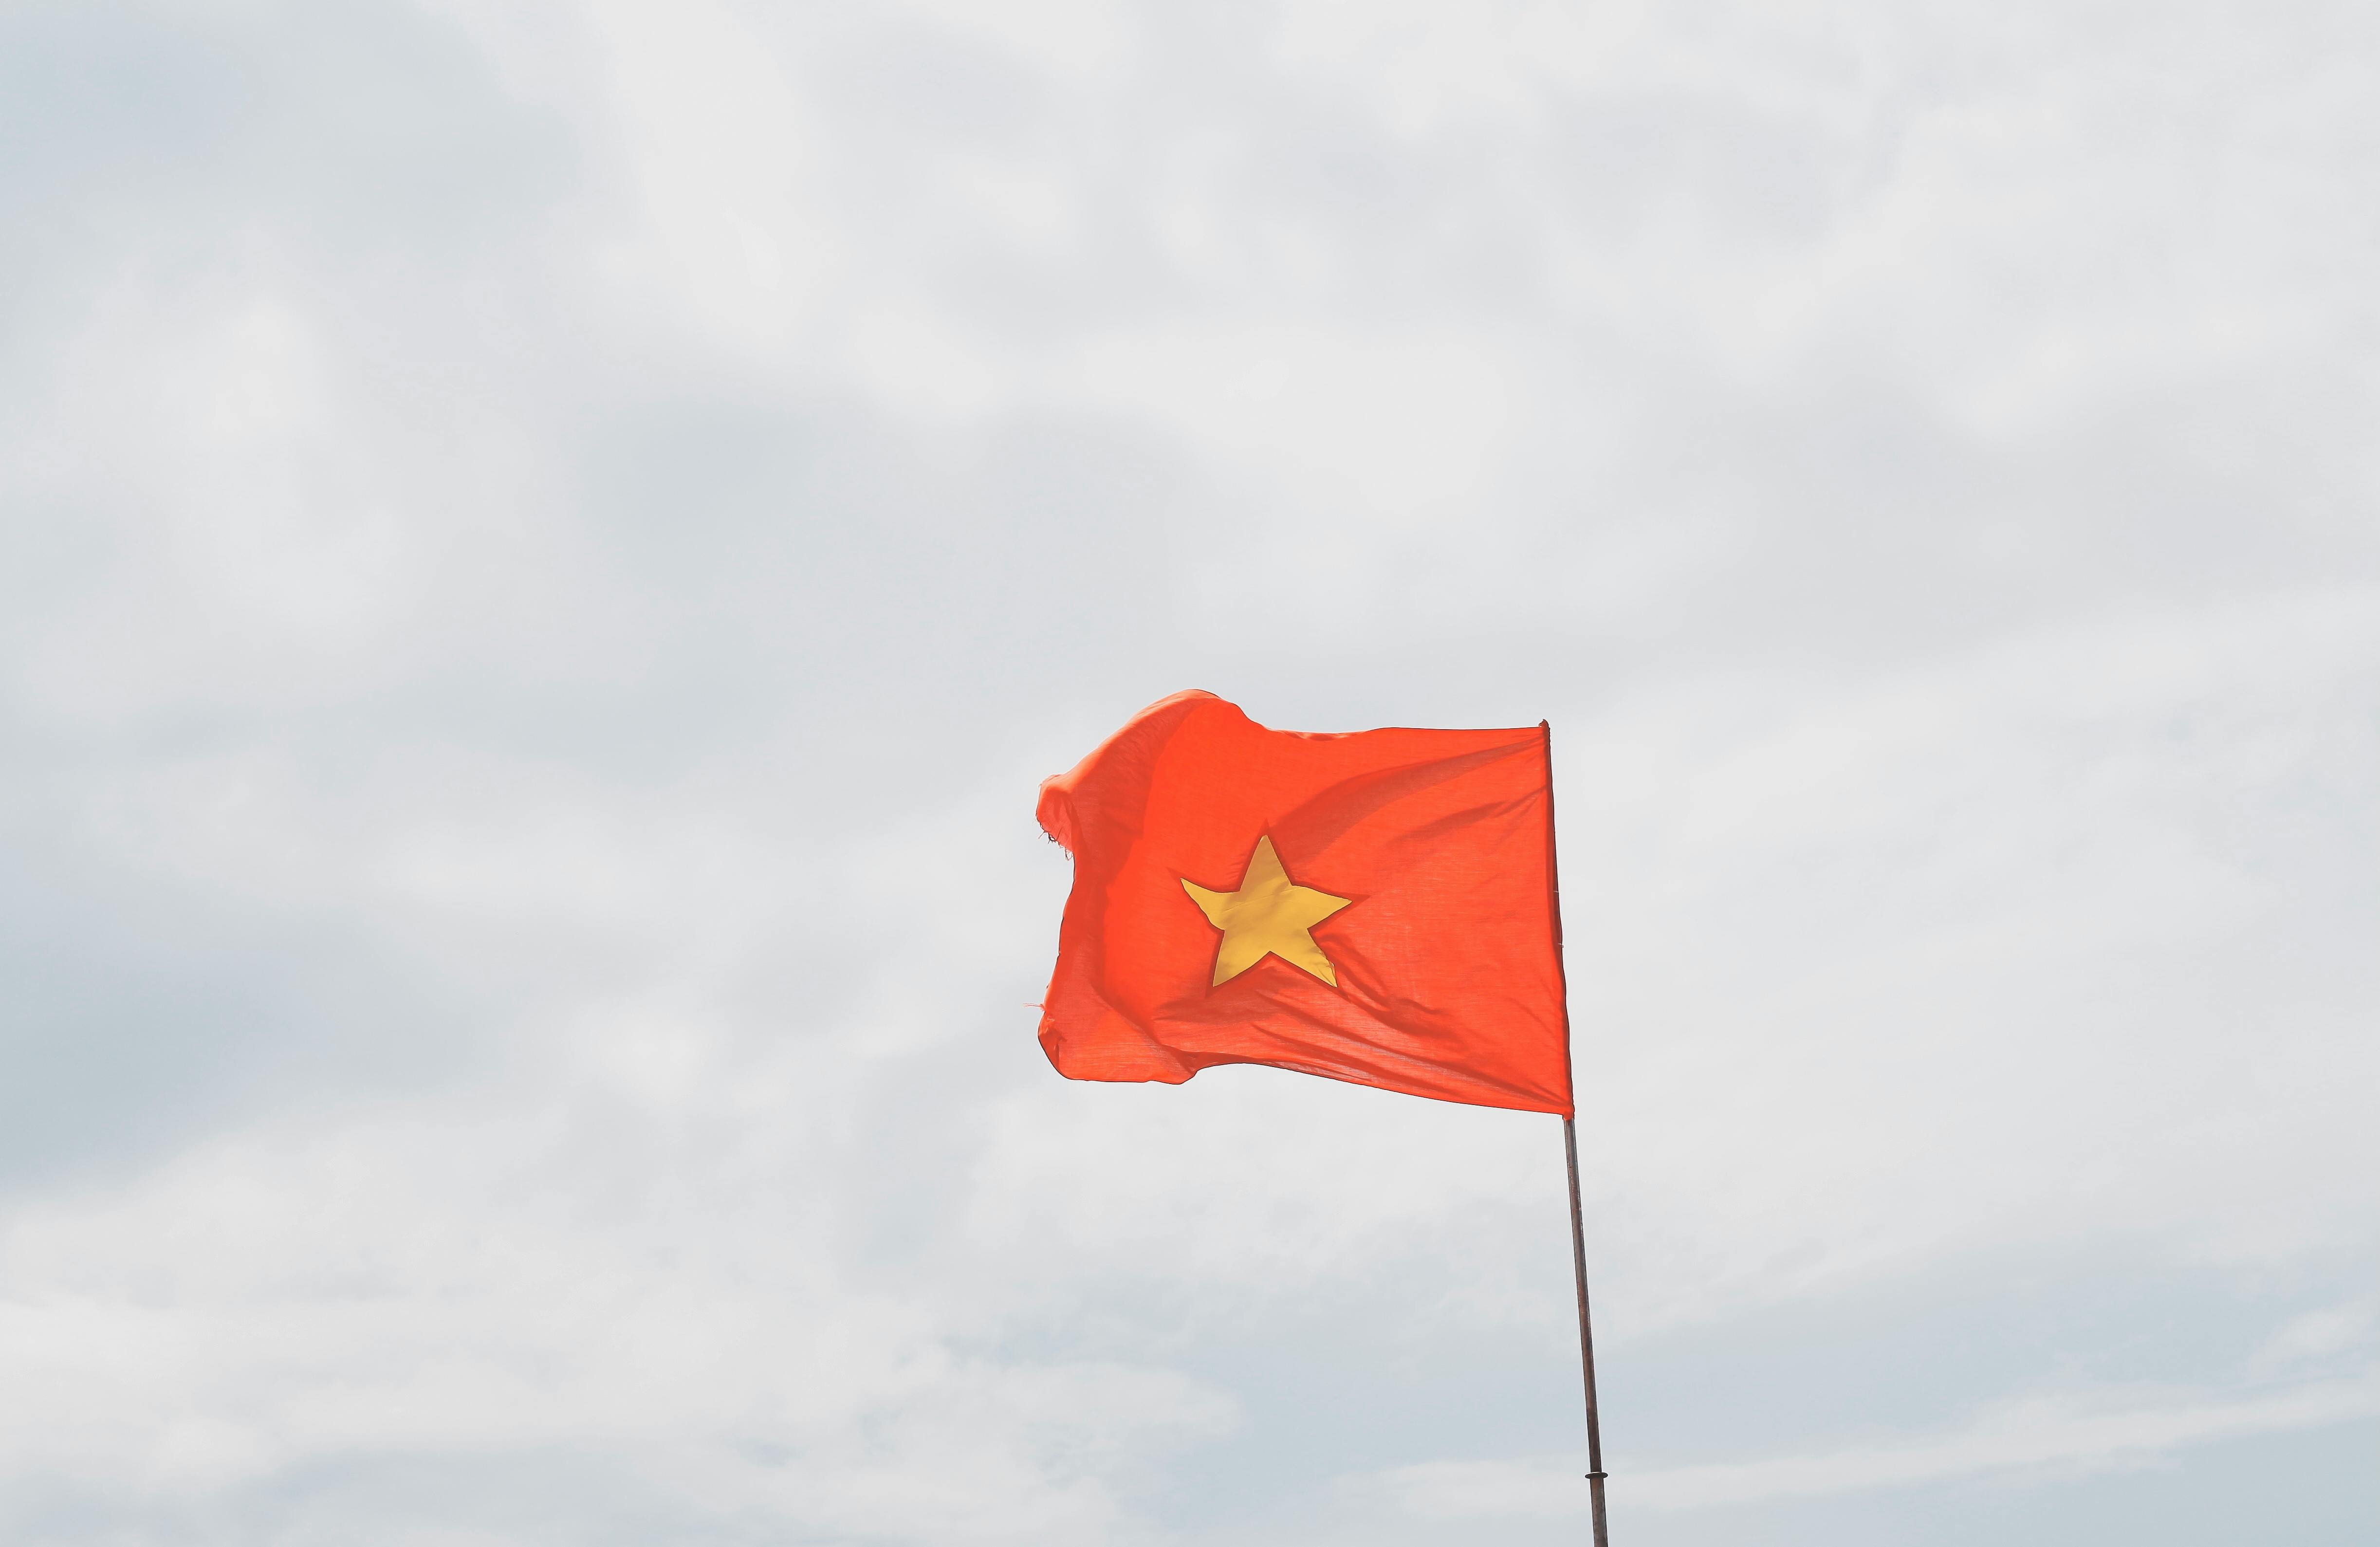 Cờ Việt Nam: Cùng chung tay với nhau mang nét đẹp của cờ Việt Nam đi khắp mọi miền đất nước. Hình ảnh này chắc chắn sẽ khiến bạn cảm động với niềm tự hào dân tộc và giúp bồi đắp thêm trong tâm hồn tình yêu quê hương thân thương.